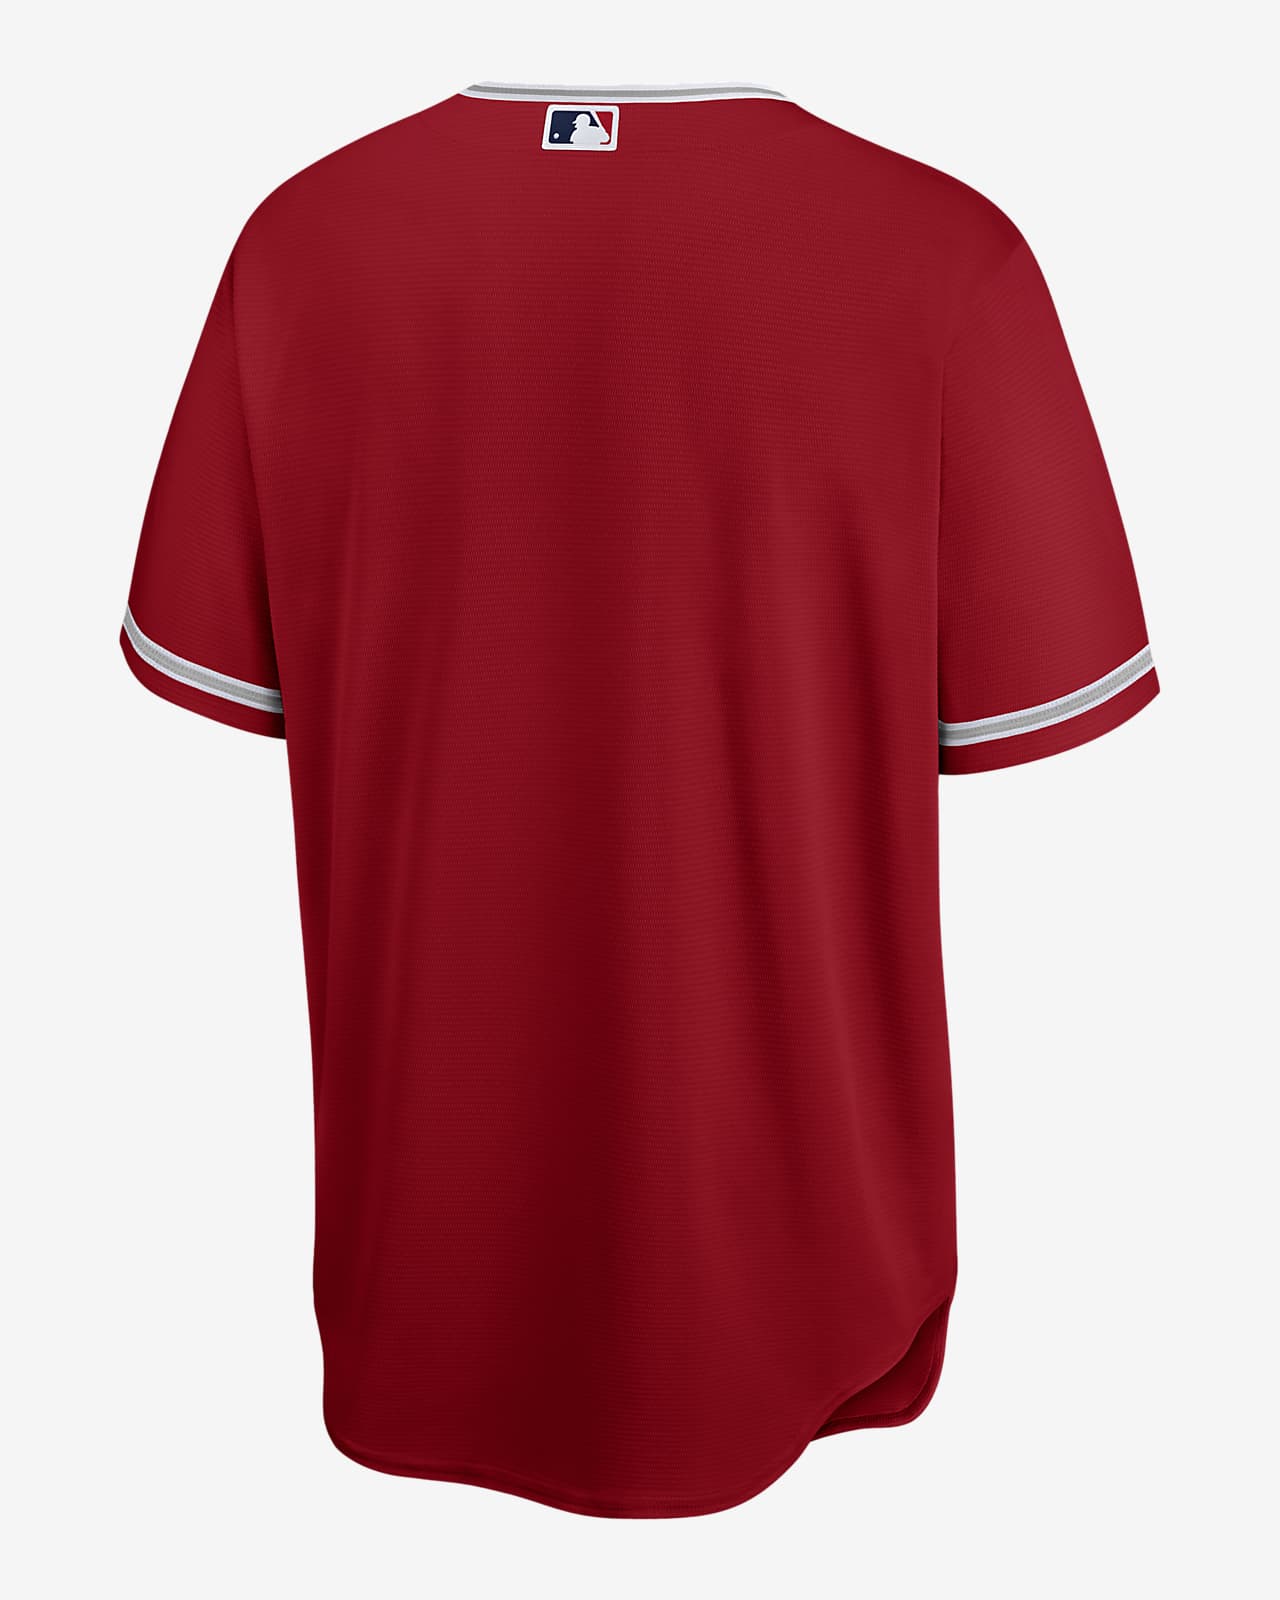 Camiseta de béisbol Replica para hombre MLB Los Angeles Angels.